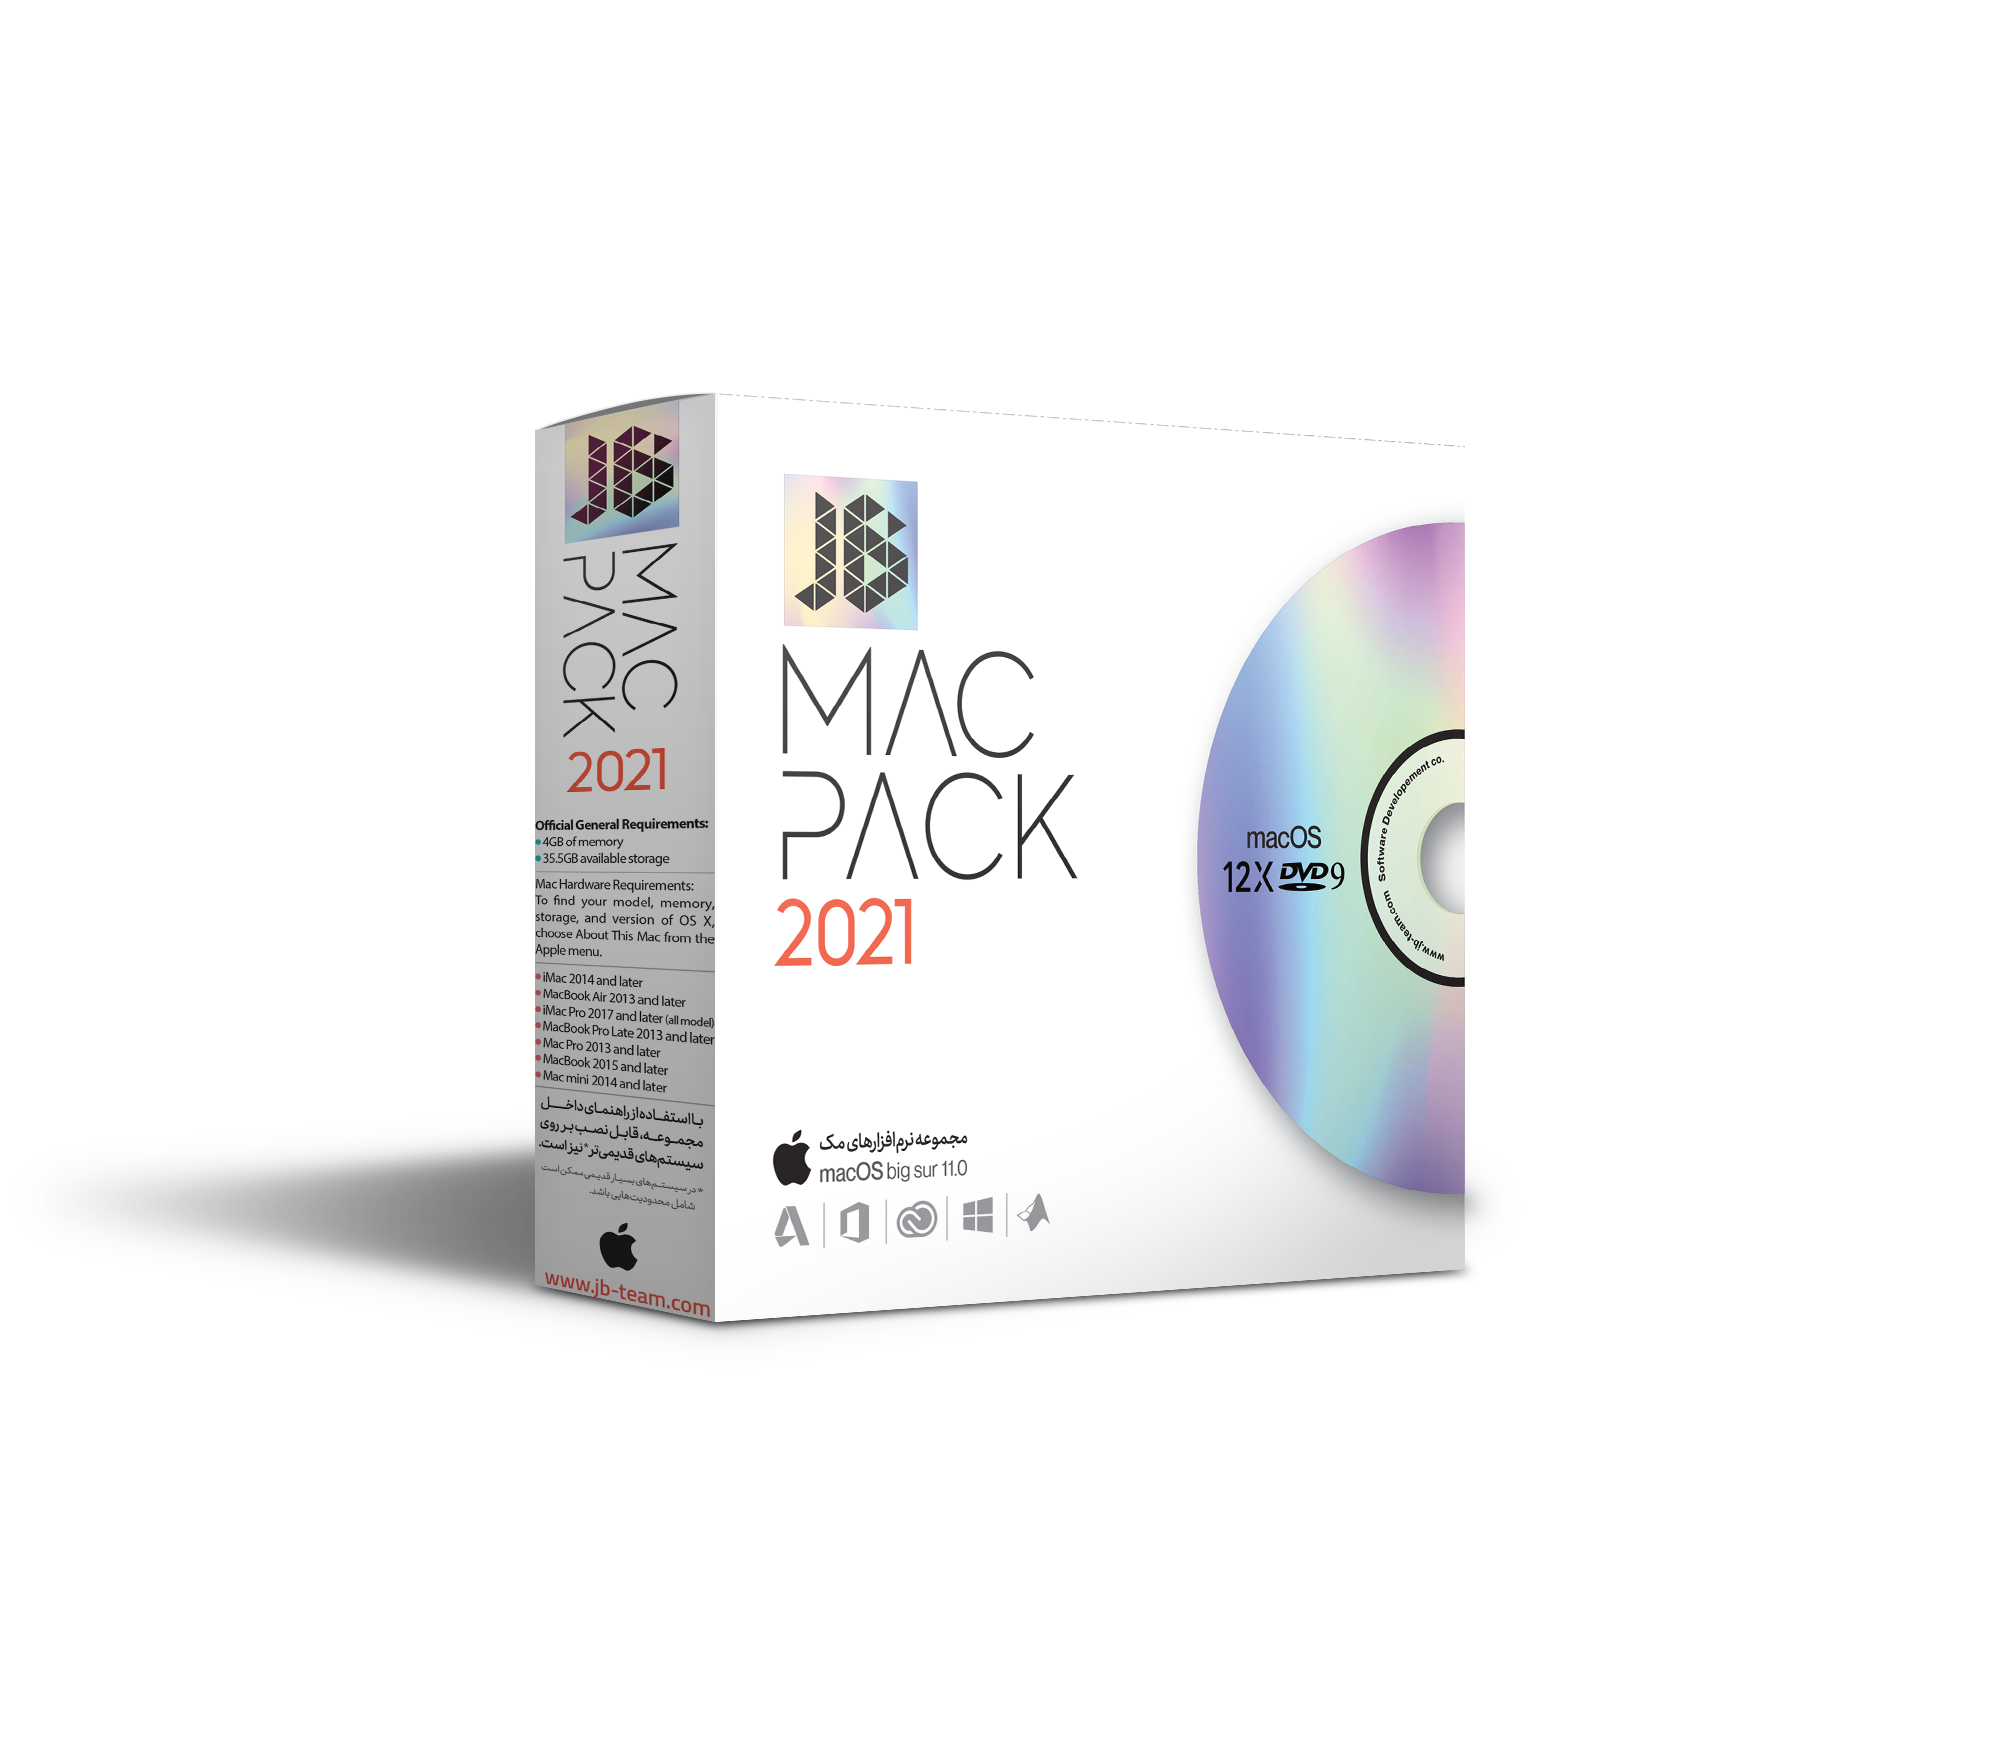 JB Mac Pack 2021